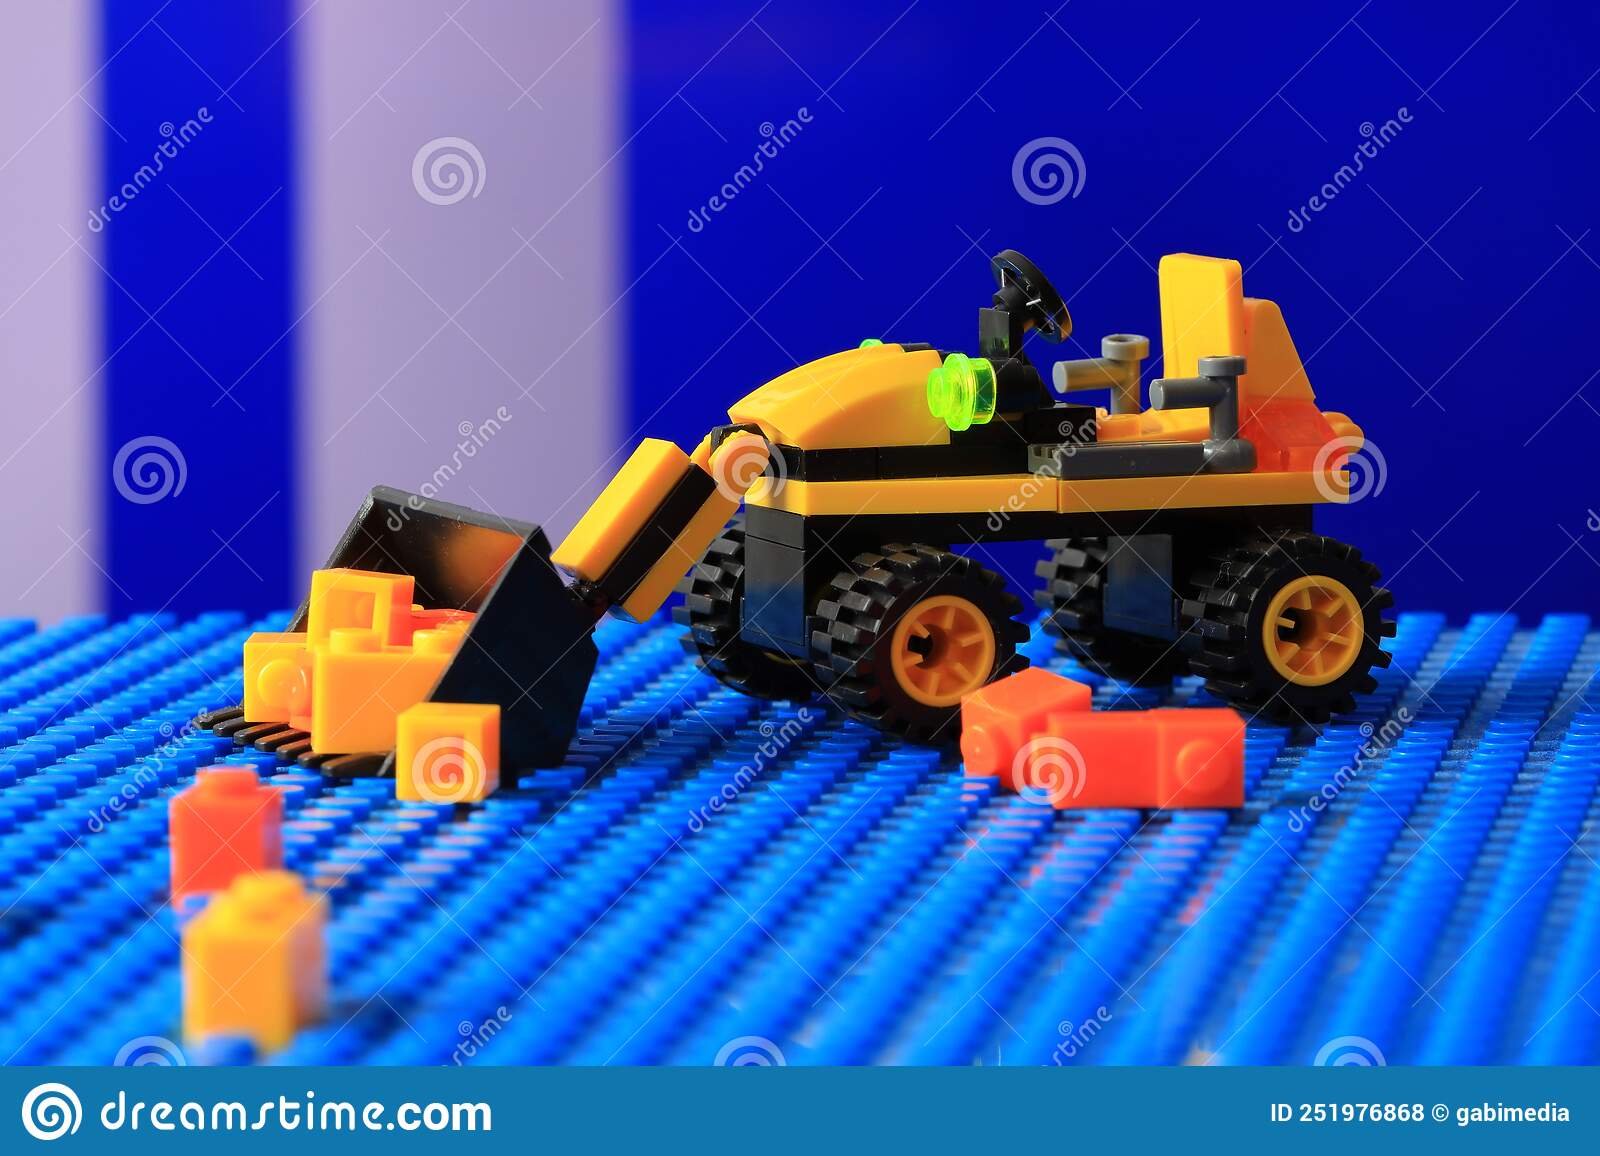 Mini excavator, jucarie pentru copii din piese de constructie